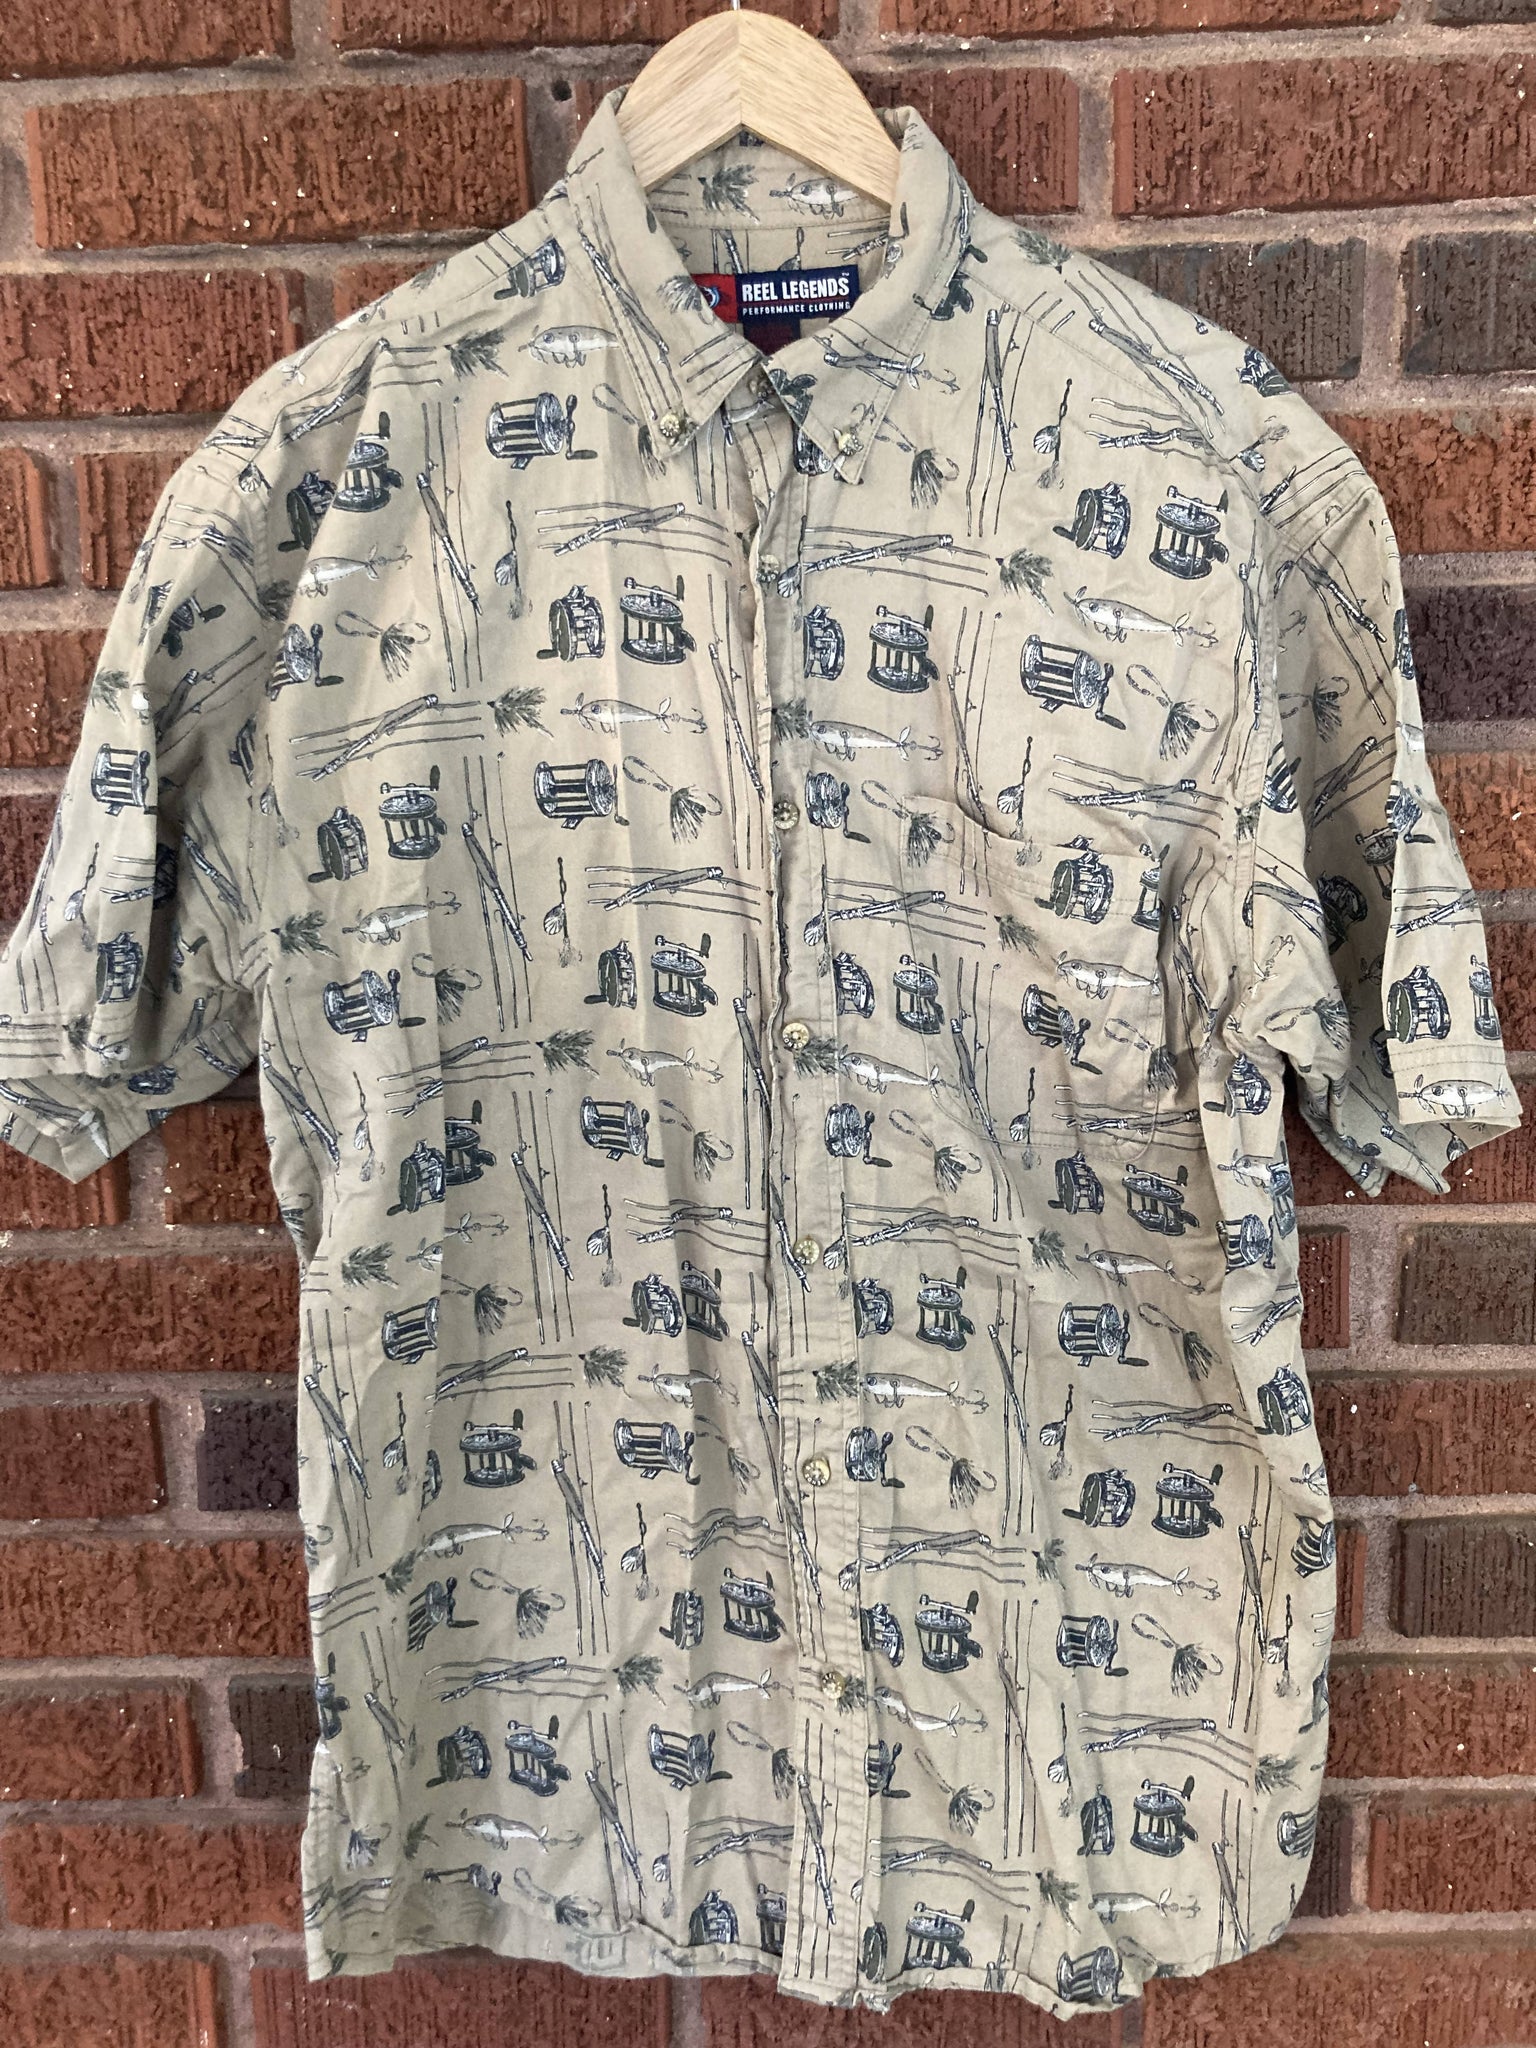 Reel Legends Fishing Short Sleeve Shirt Size Large – Camoretro